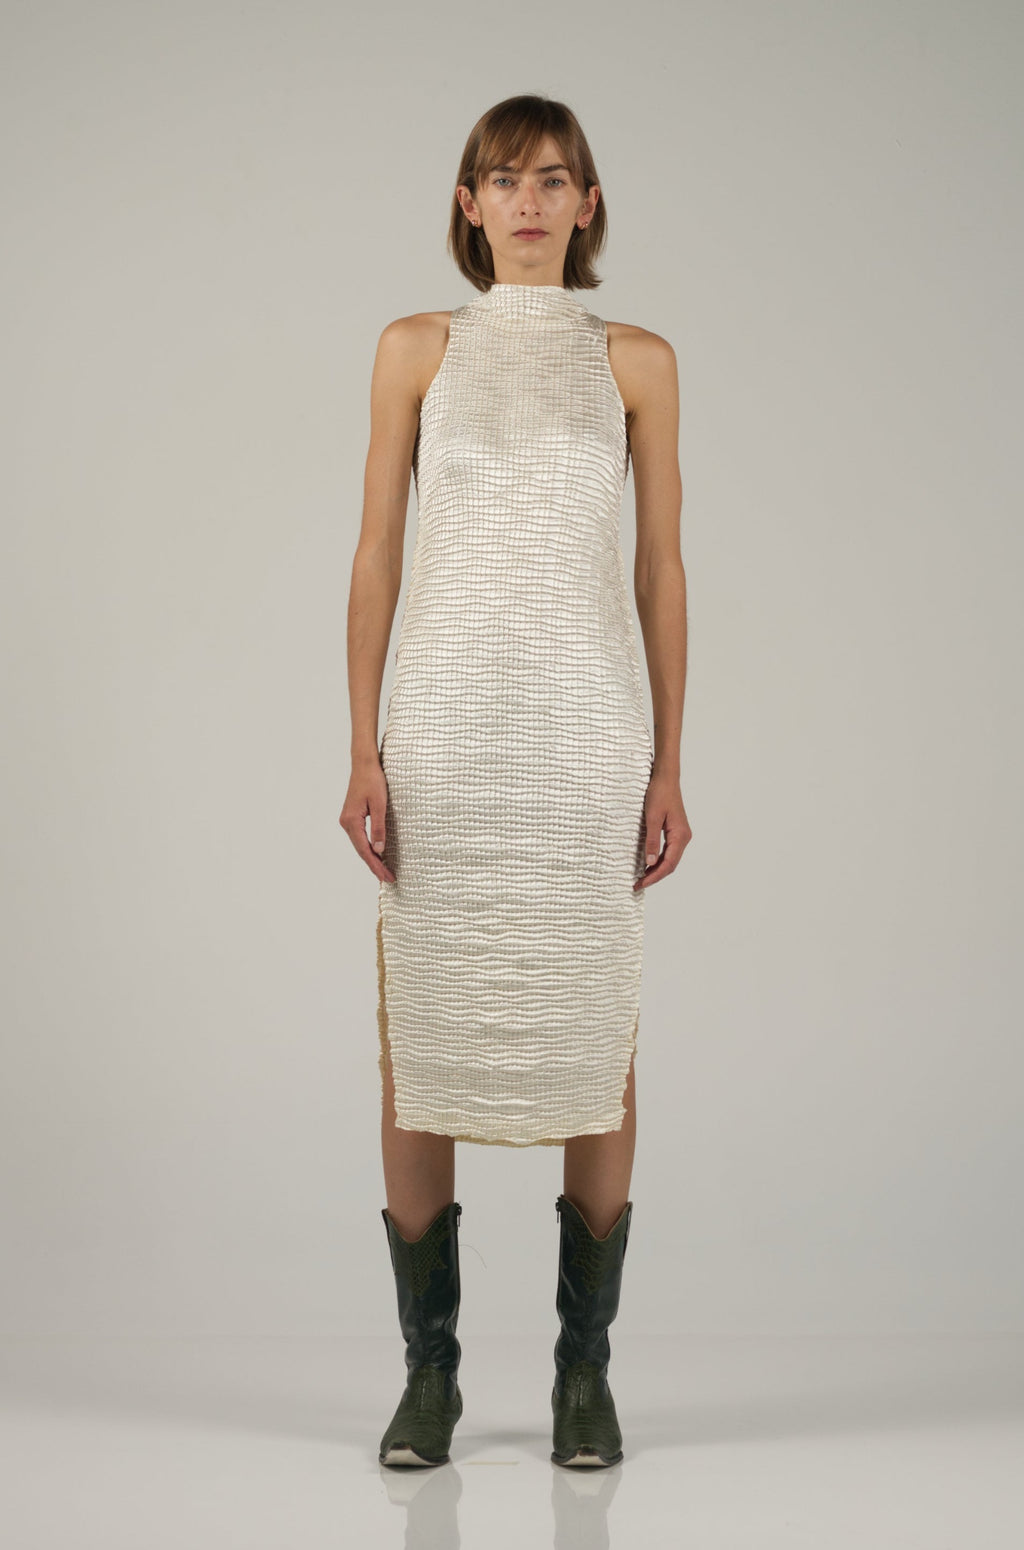 Skin Singlet Dress in Pearl - Nin Studio